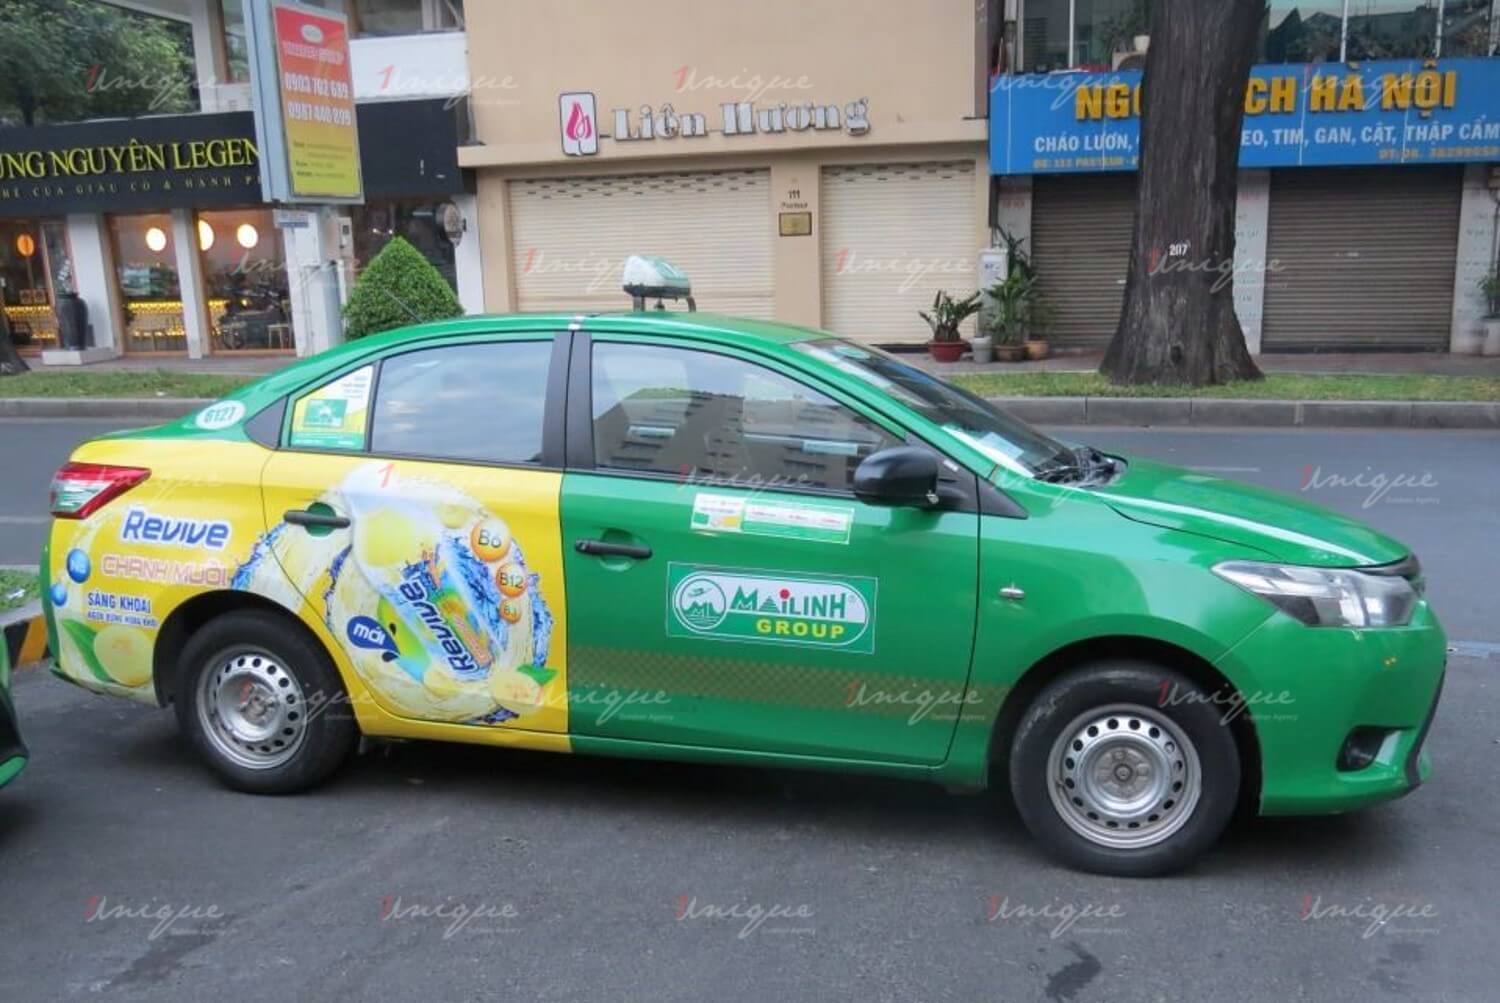 Quảng cáo trên xe taxi cũng là một loại quảng cáo ngoài trời khá phổ biến